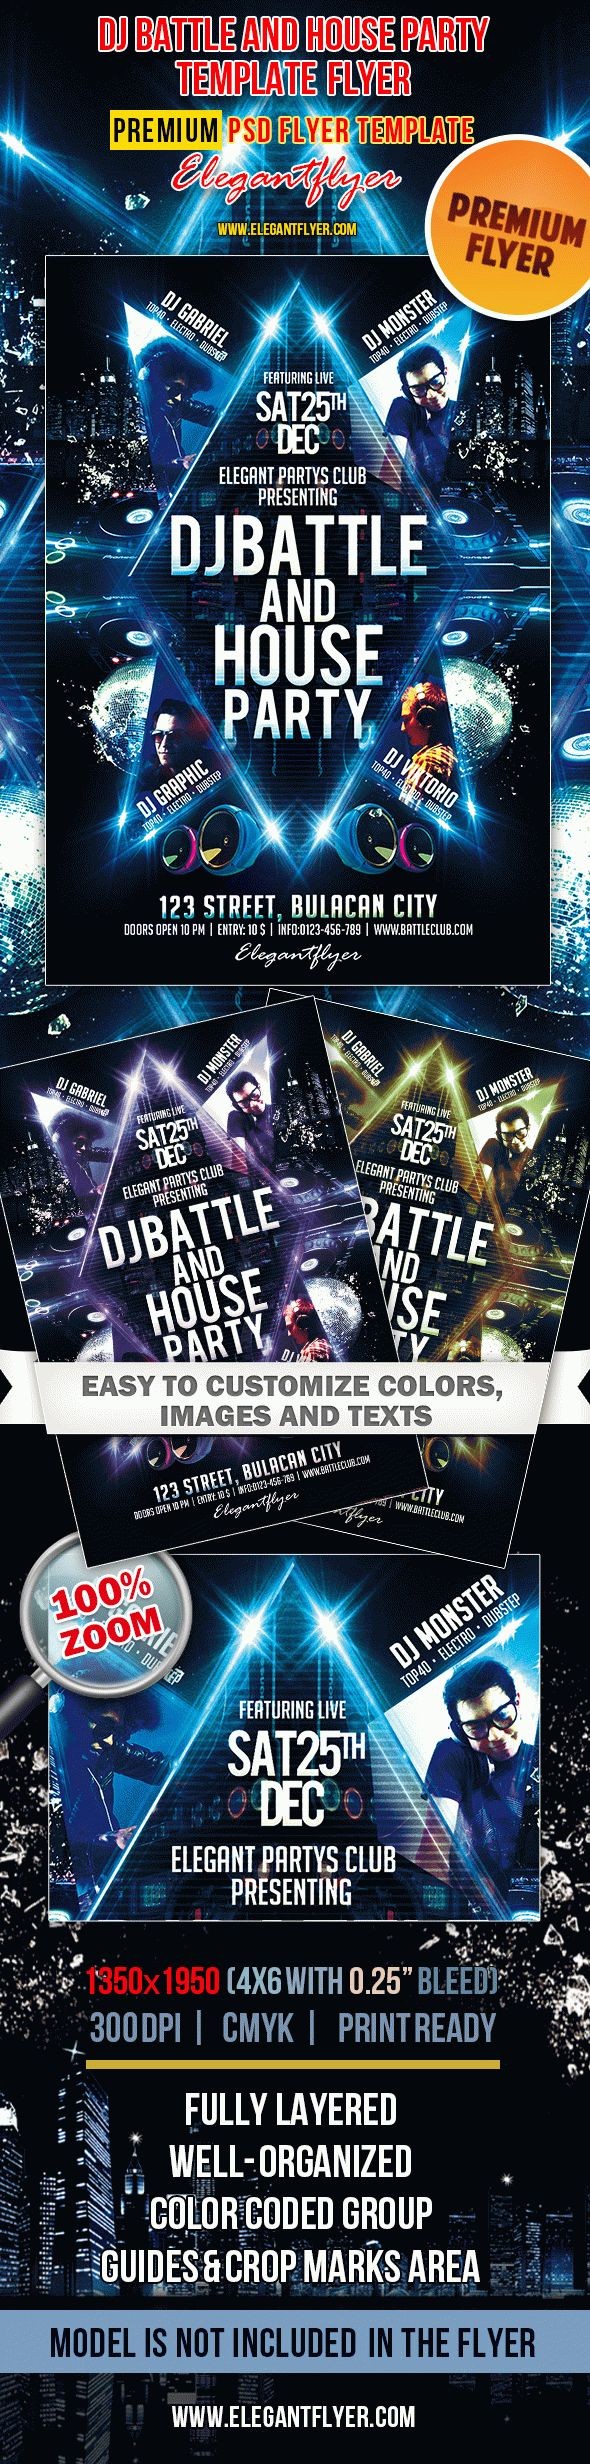 Dj Battle und House Party by ElegantFlyer